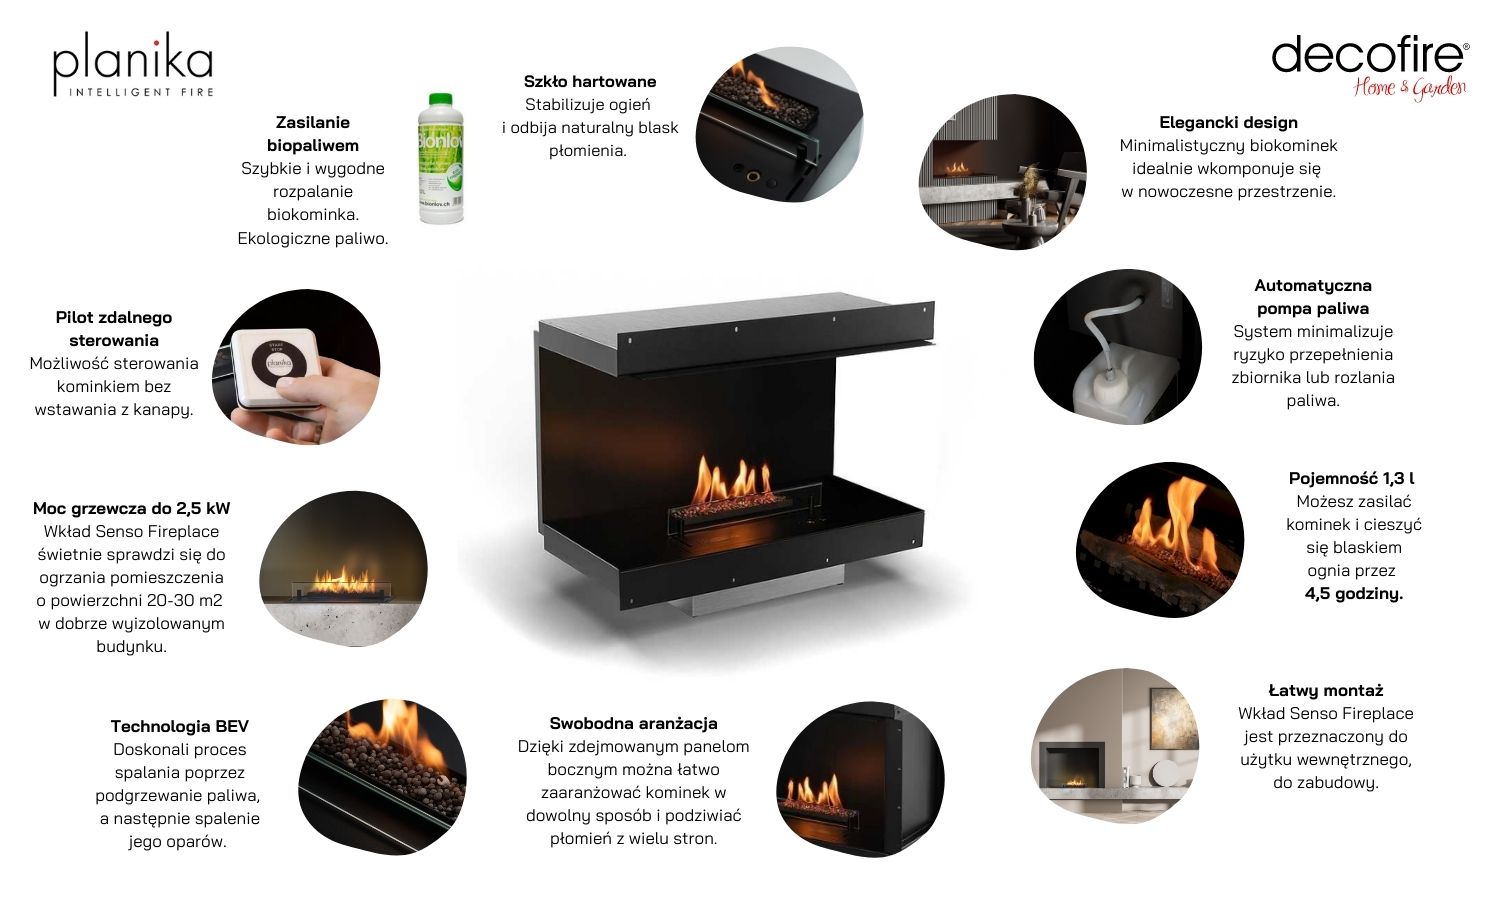 Wkład automatyczny Senso Fireplace Planika – właściwości